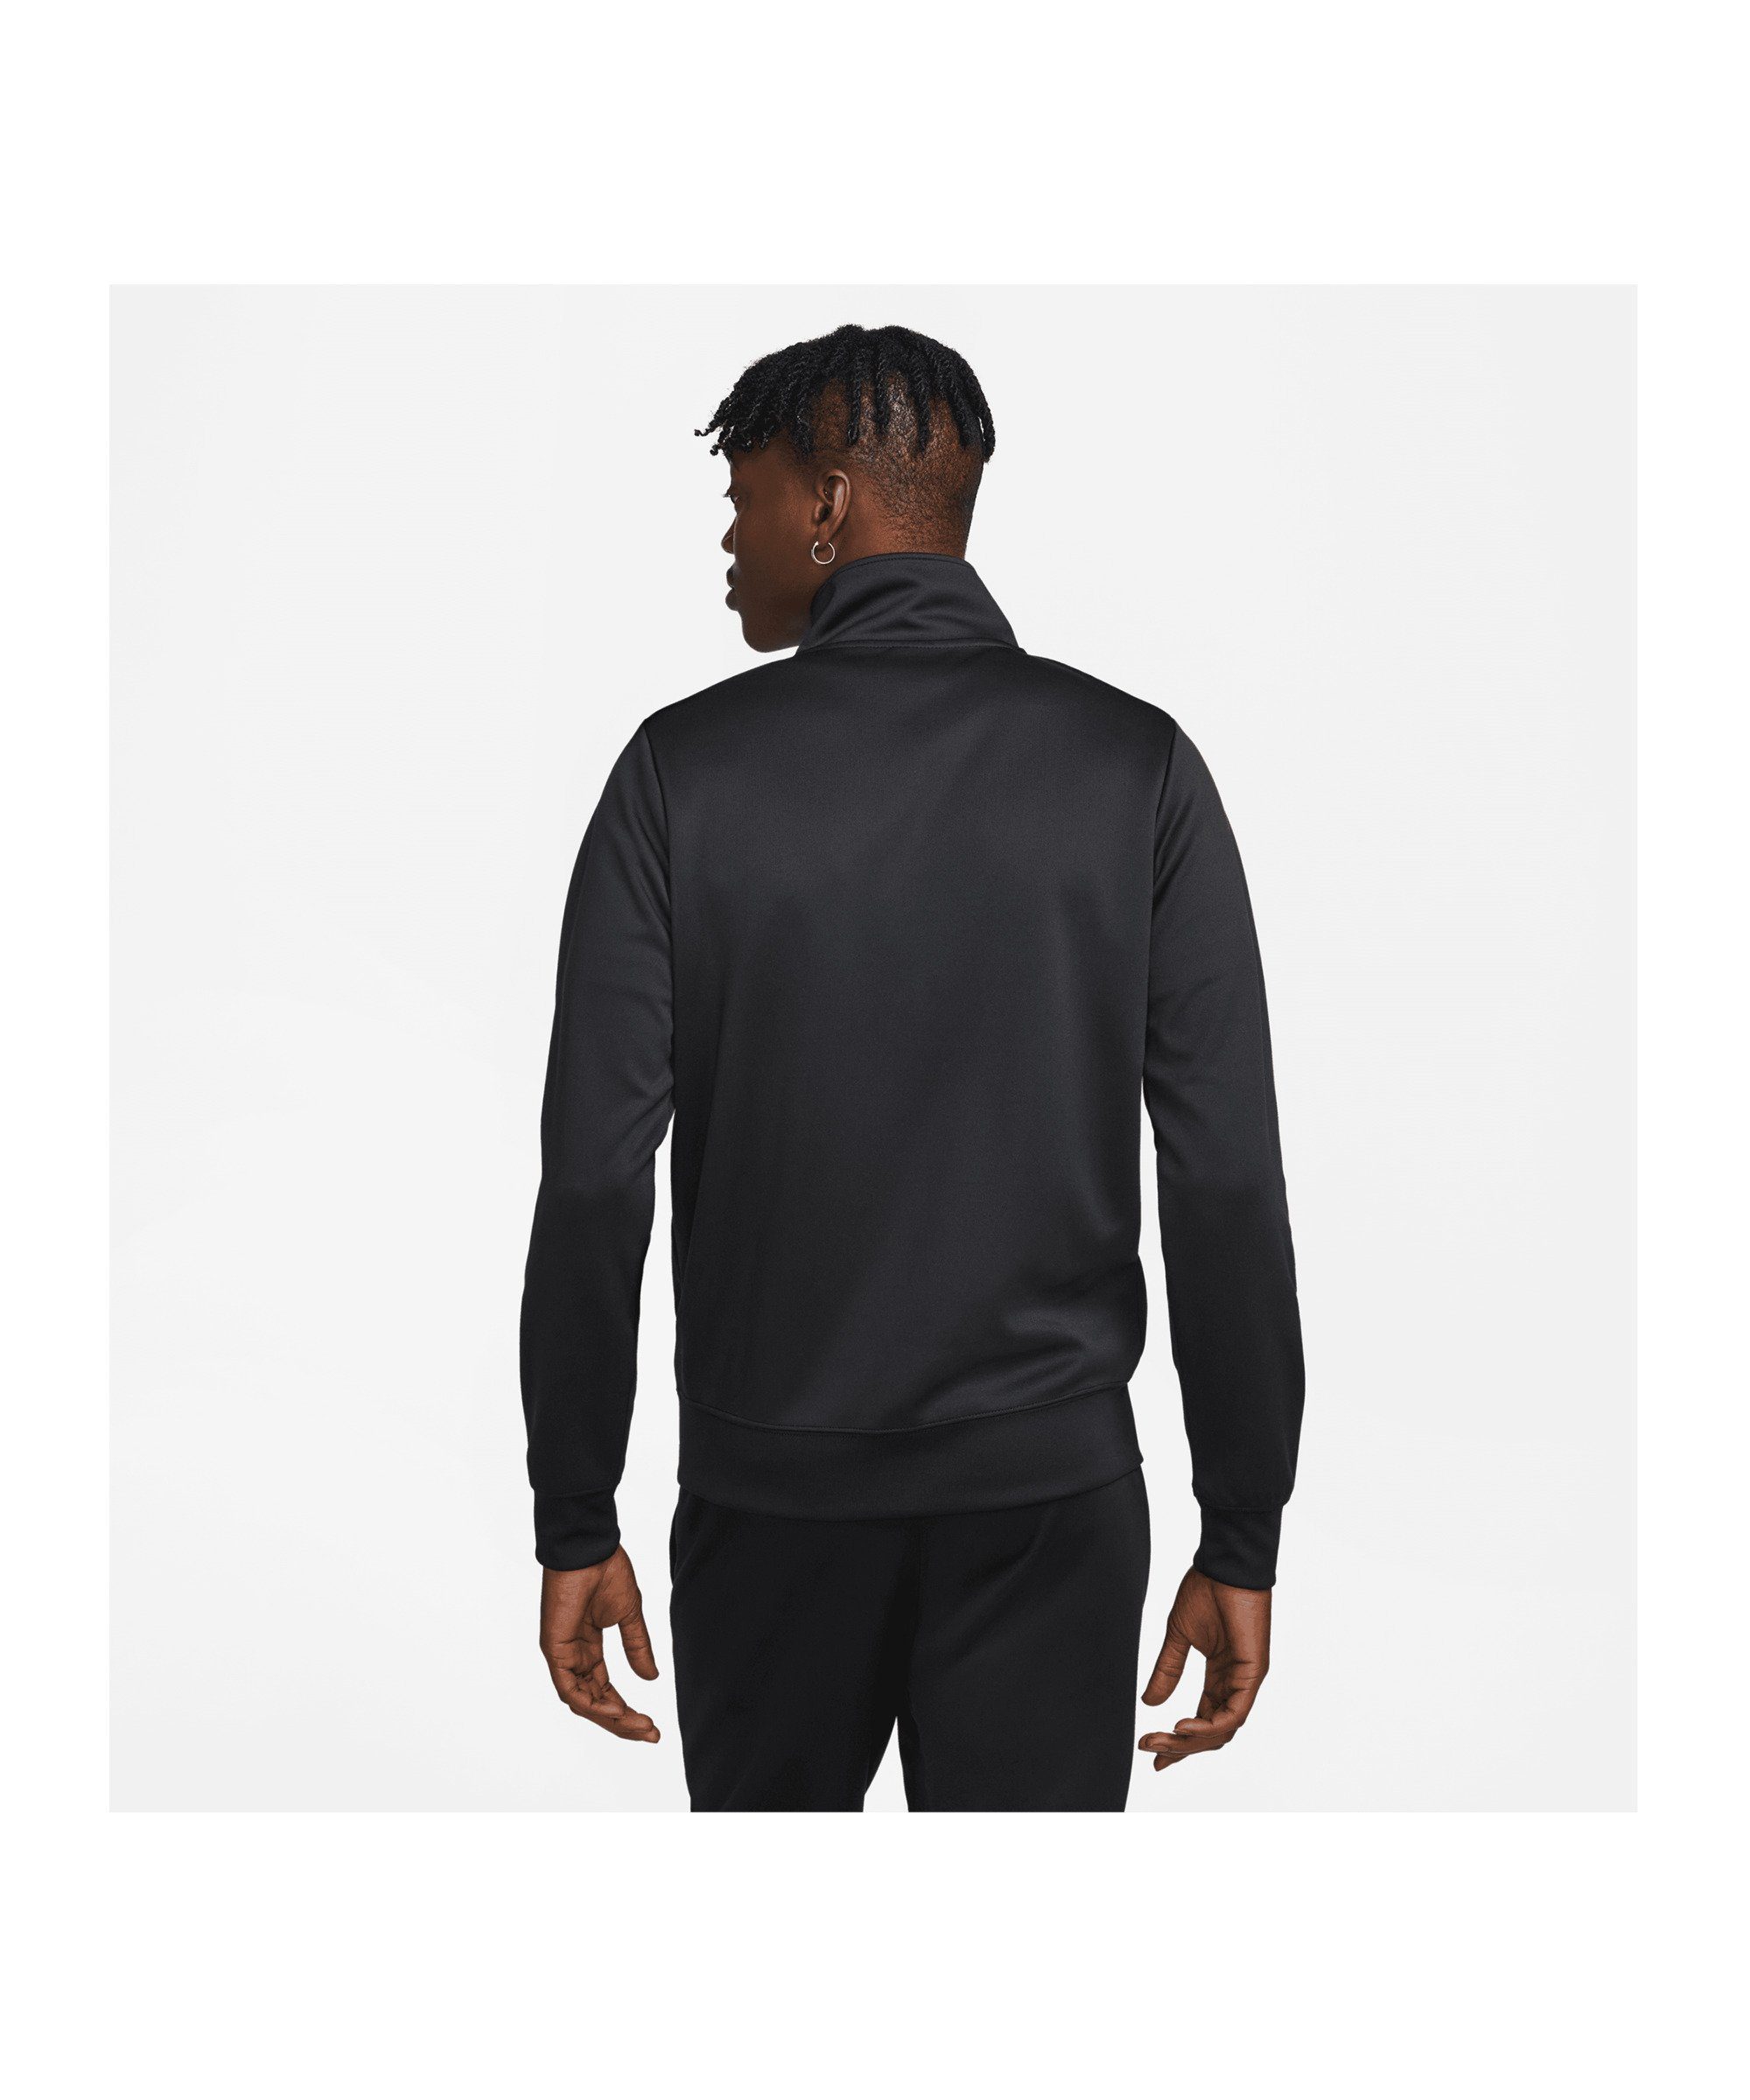 Issue Nike Sportswear Sweatjacke Standart Jacke schwarz